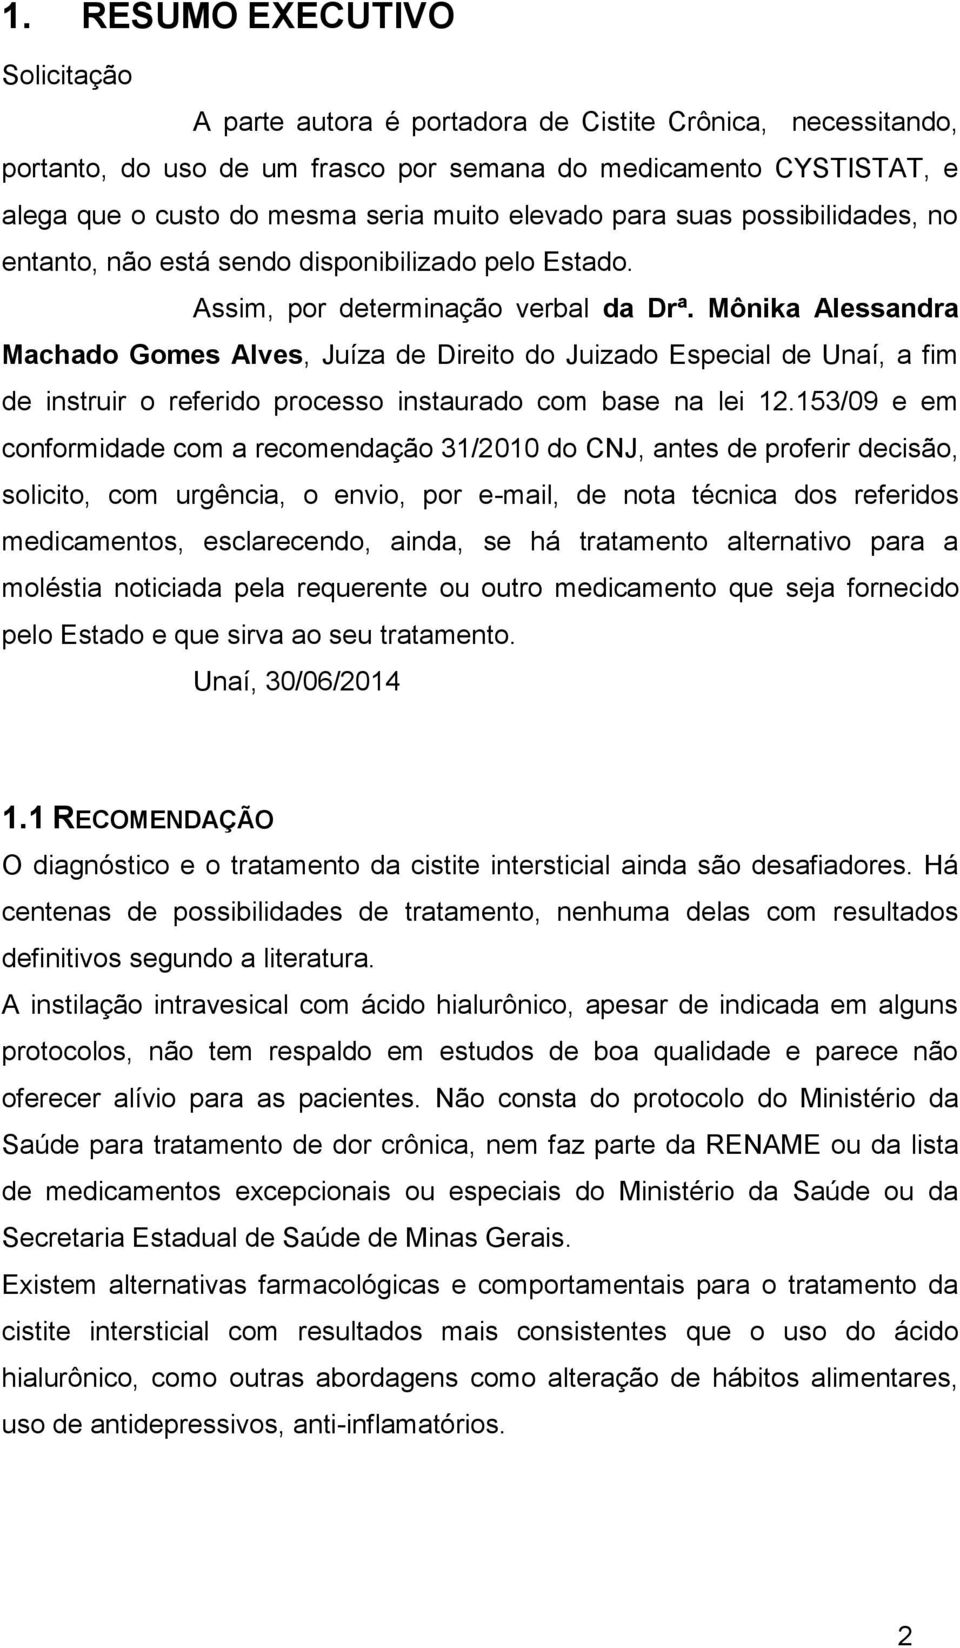 Mônika Alessandra Machado Gomes Alves, Juíza de Direito do Juizado Especial de Unaí, a fim de instruir o referido processo instaurado com base na lei 12.